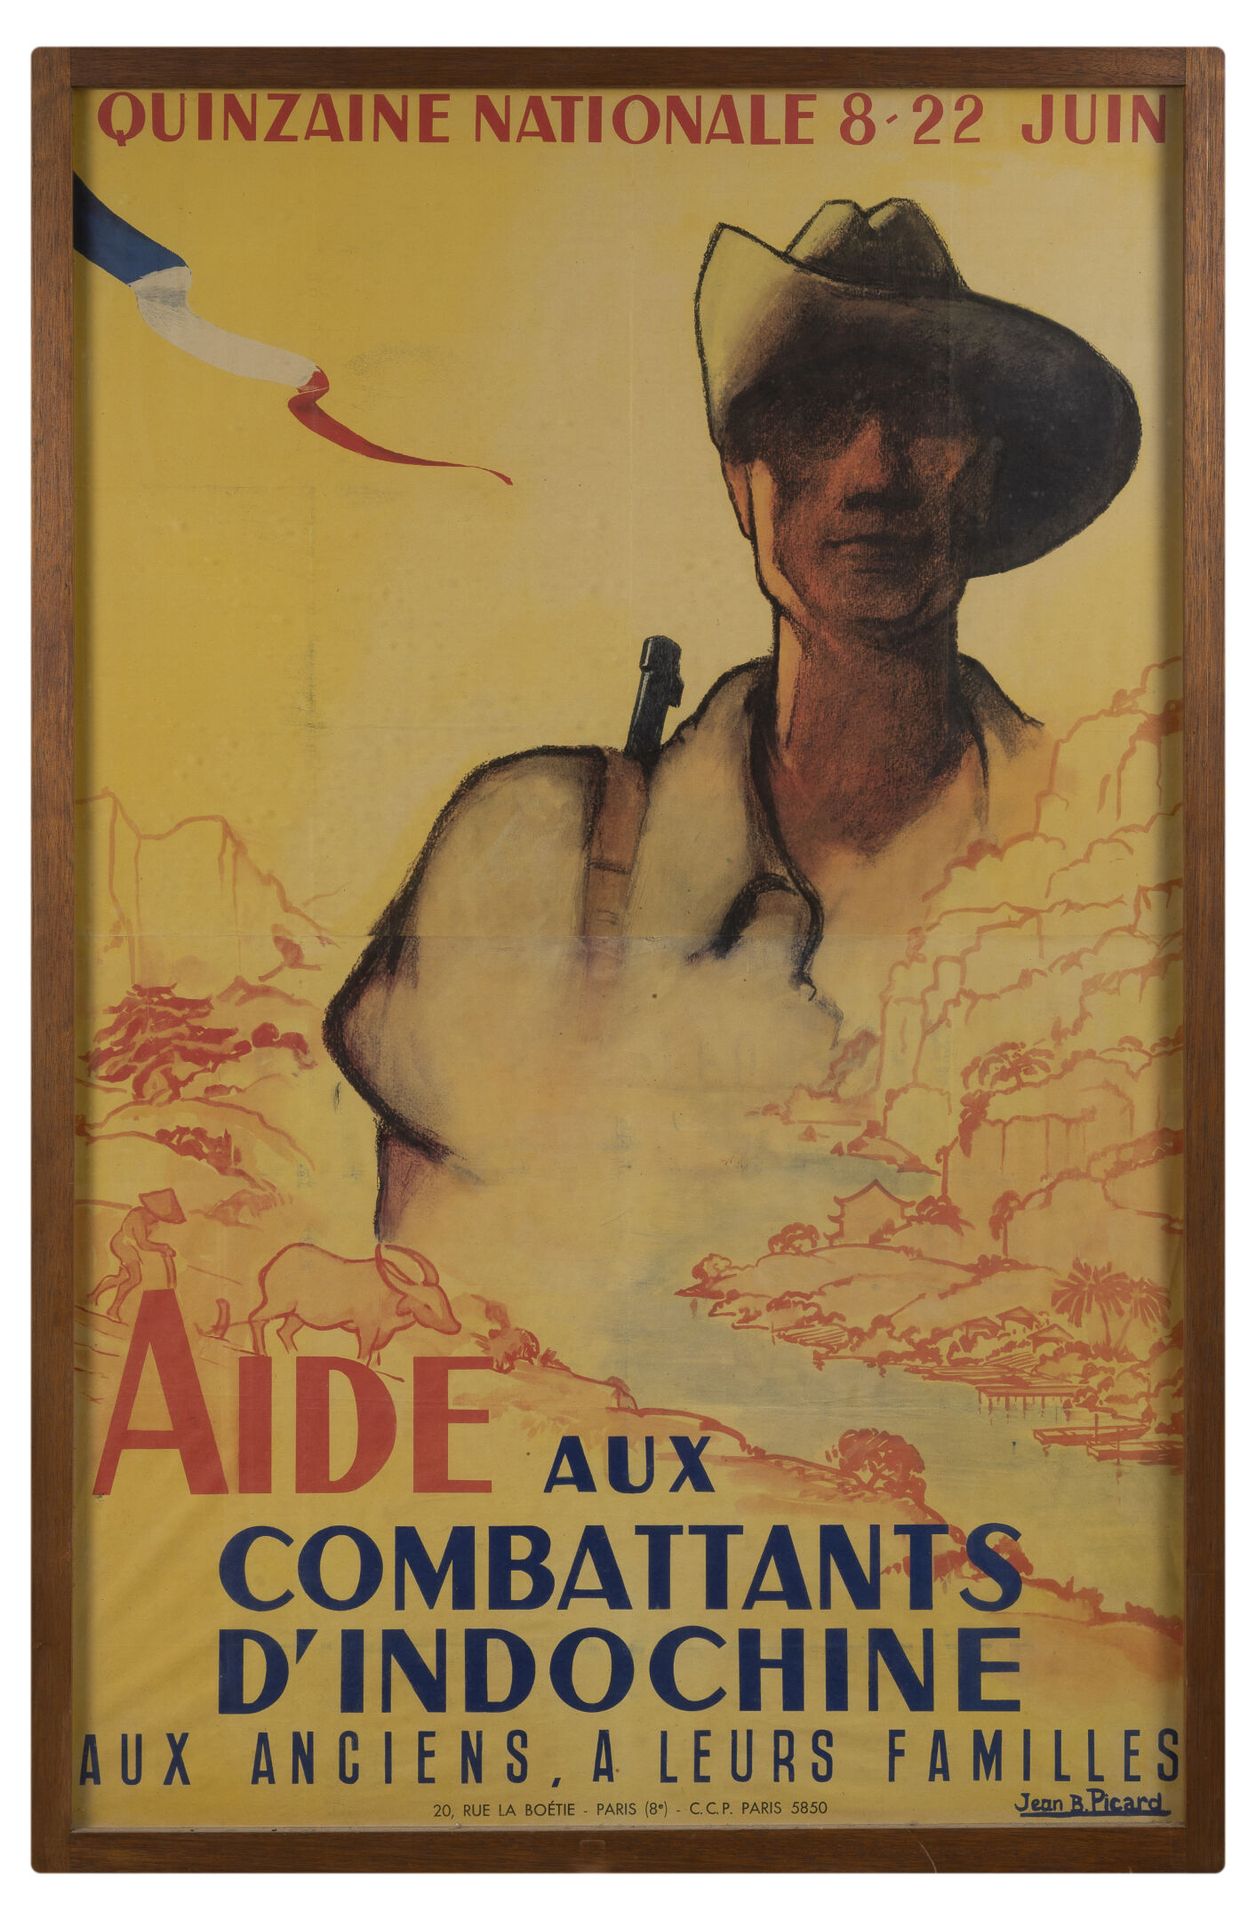 Null Hilfe für die Indochina-Kämpfer.

Illustriertes Plakat von Jean B. Picard. &hellip;